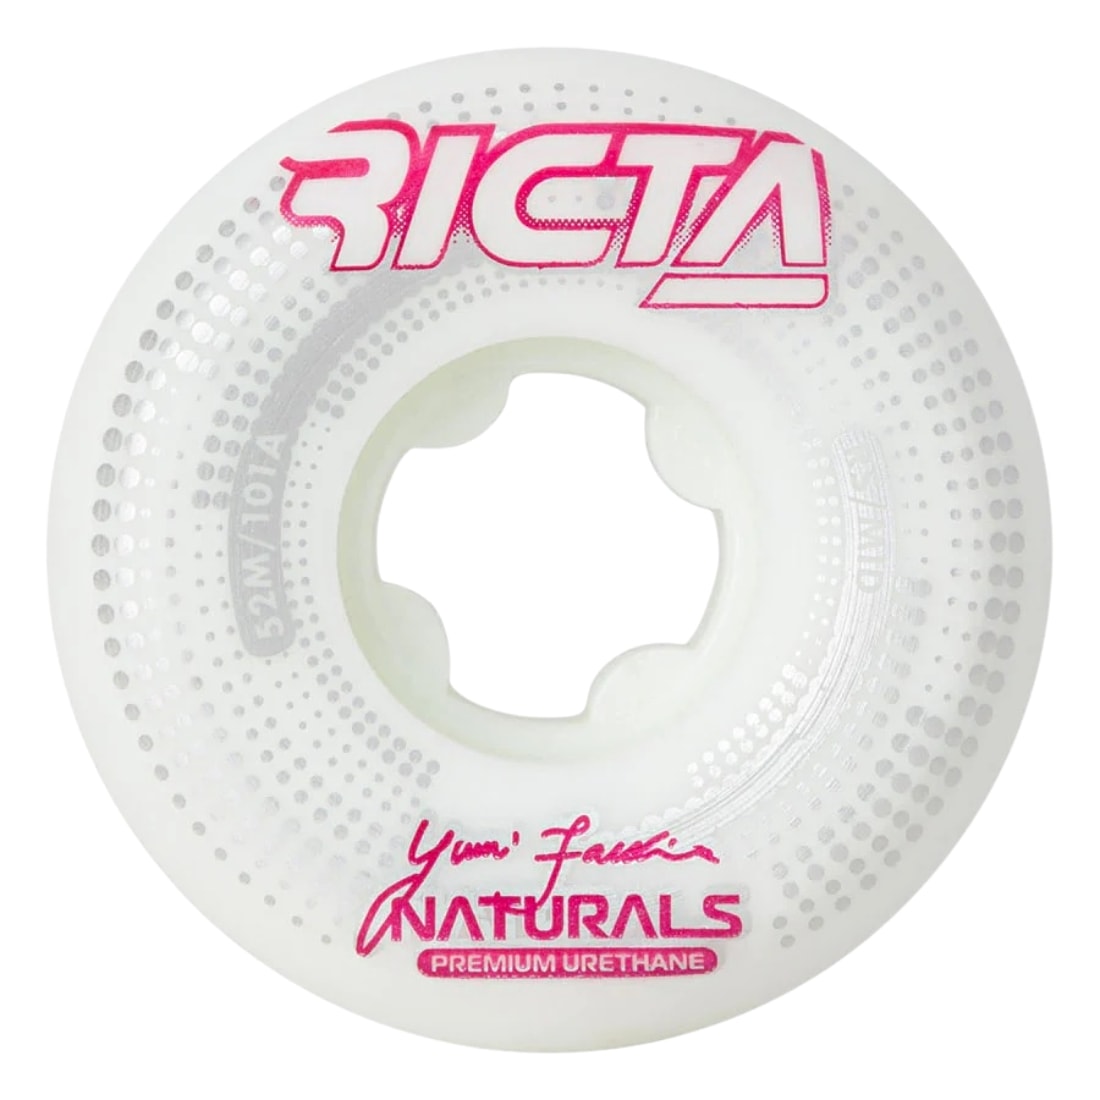 Ricta 52mm Facchini Source Naturals Mid 101A Skateboard Wheels - White - Skateboard Wheels by Ricta 52mm